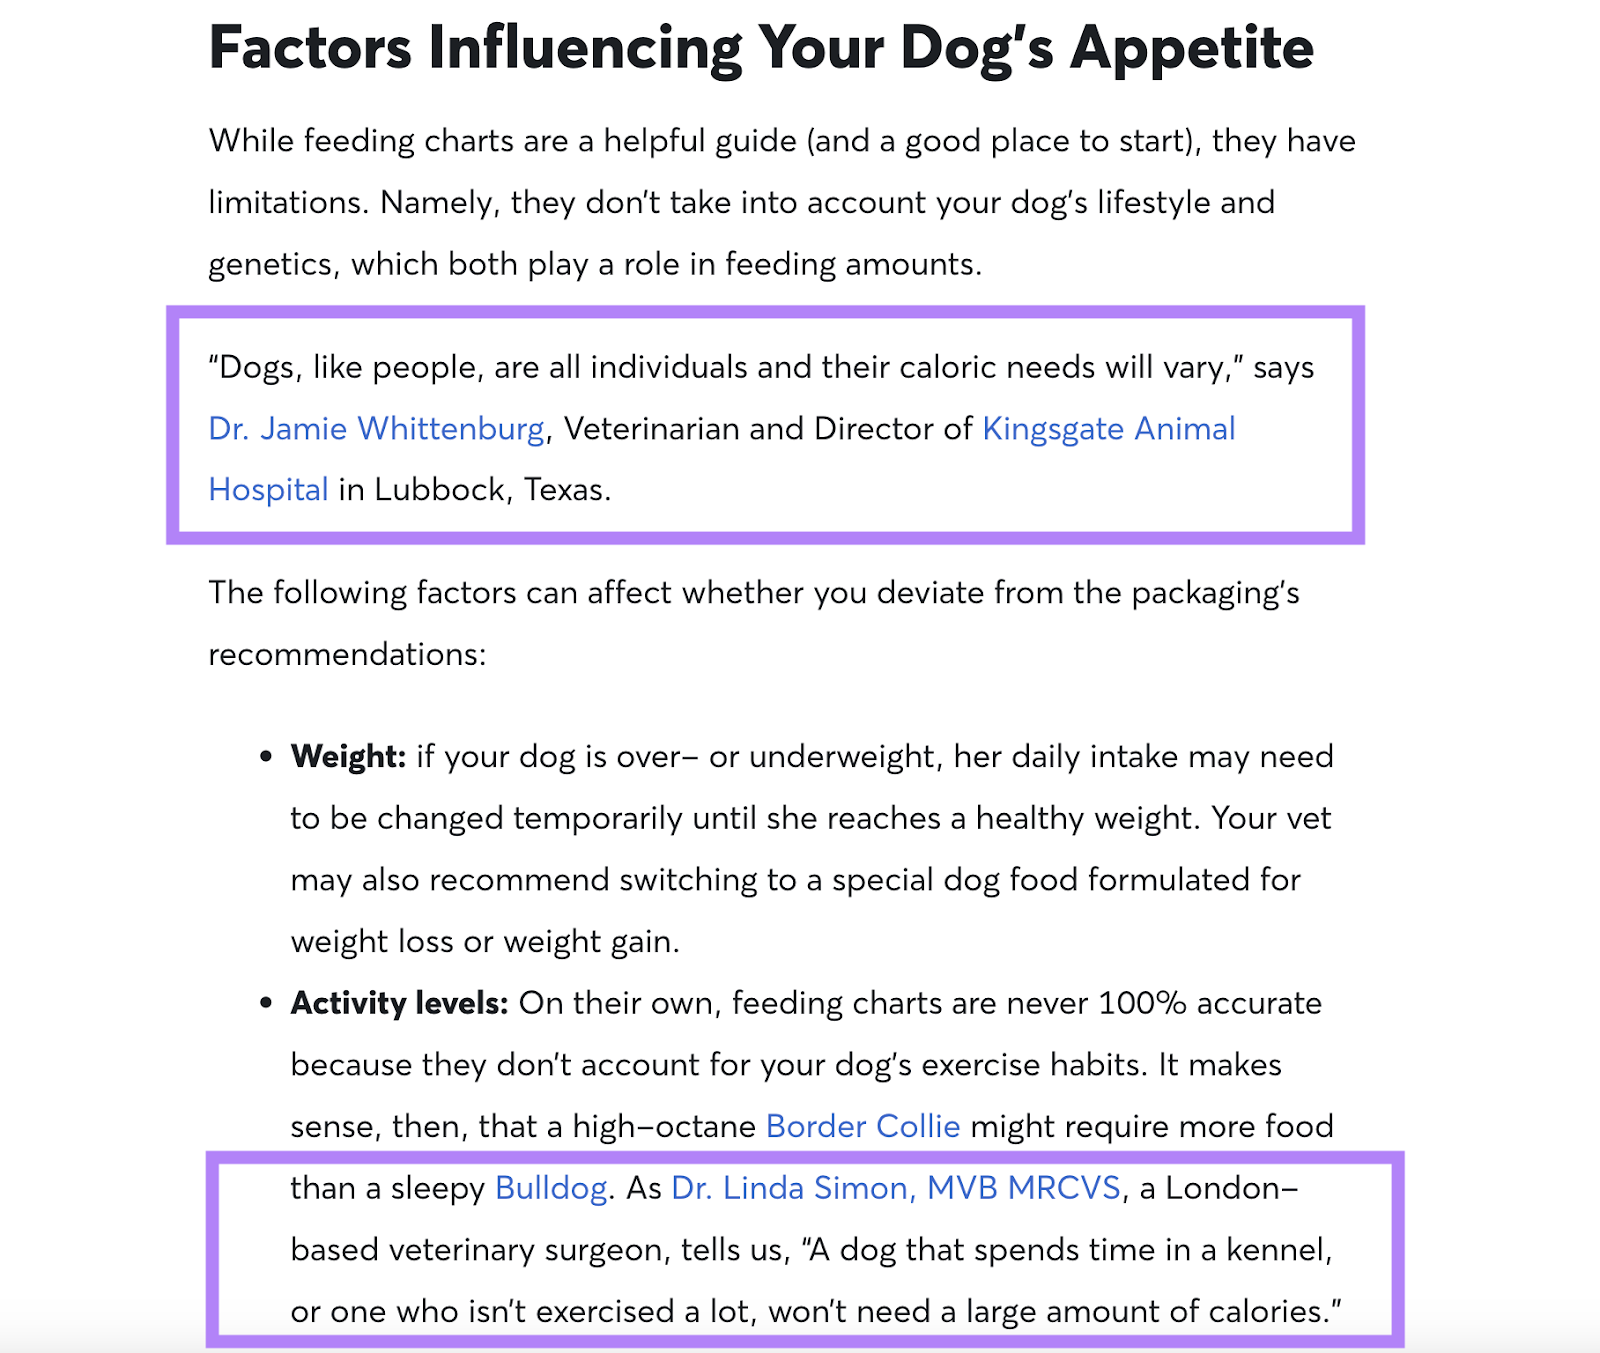 Exemples d'utilisation de sources fiables dans le guide d'alimentation pour chiens de Rover